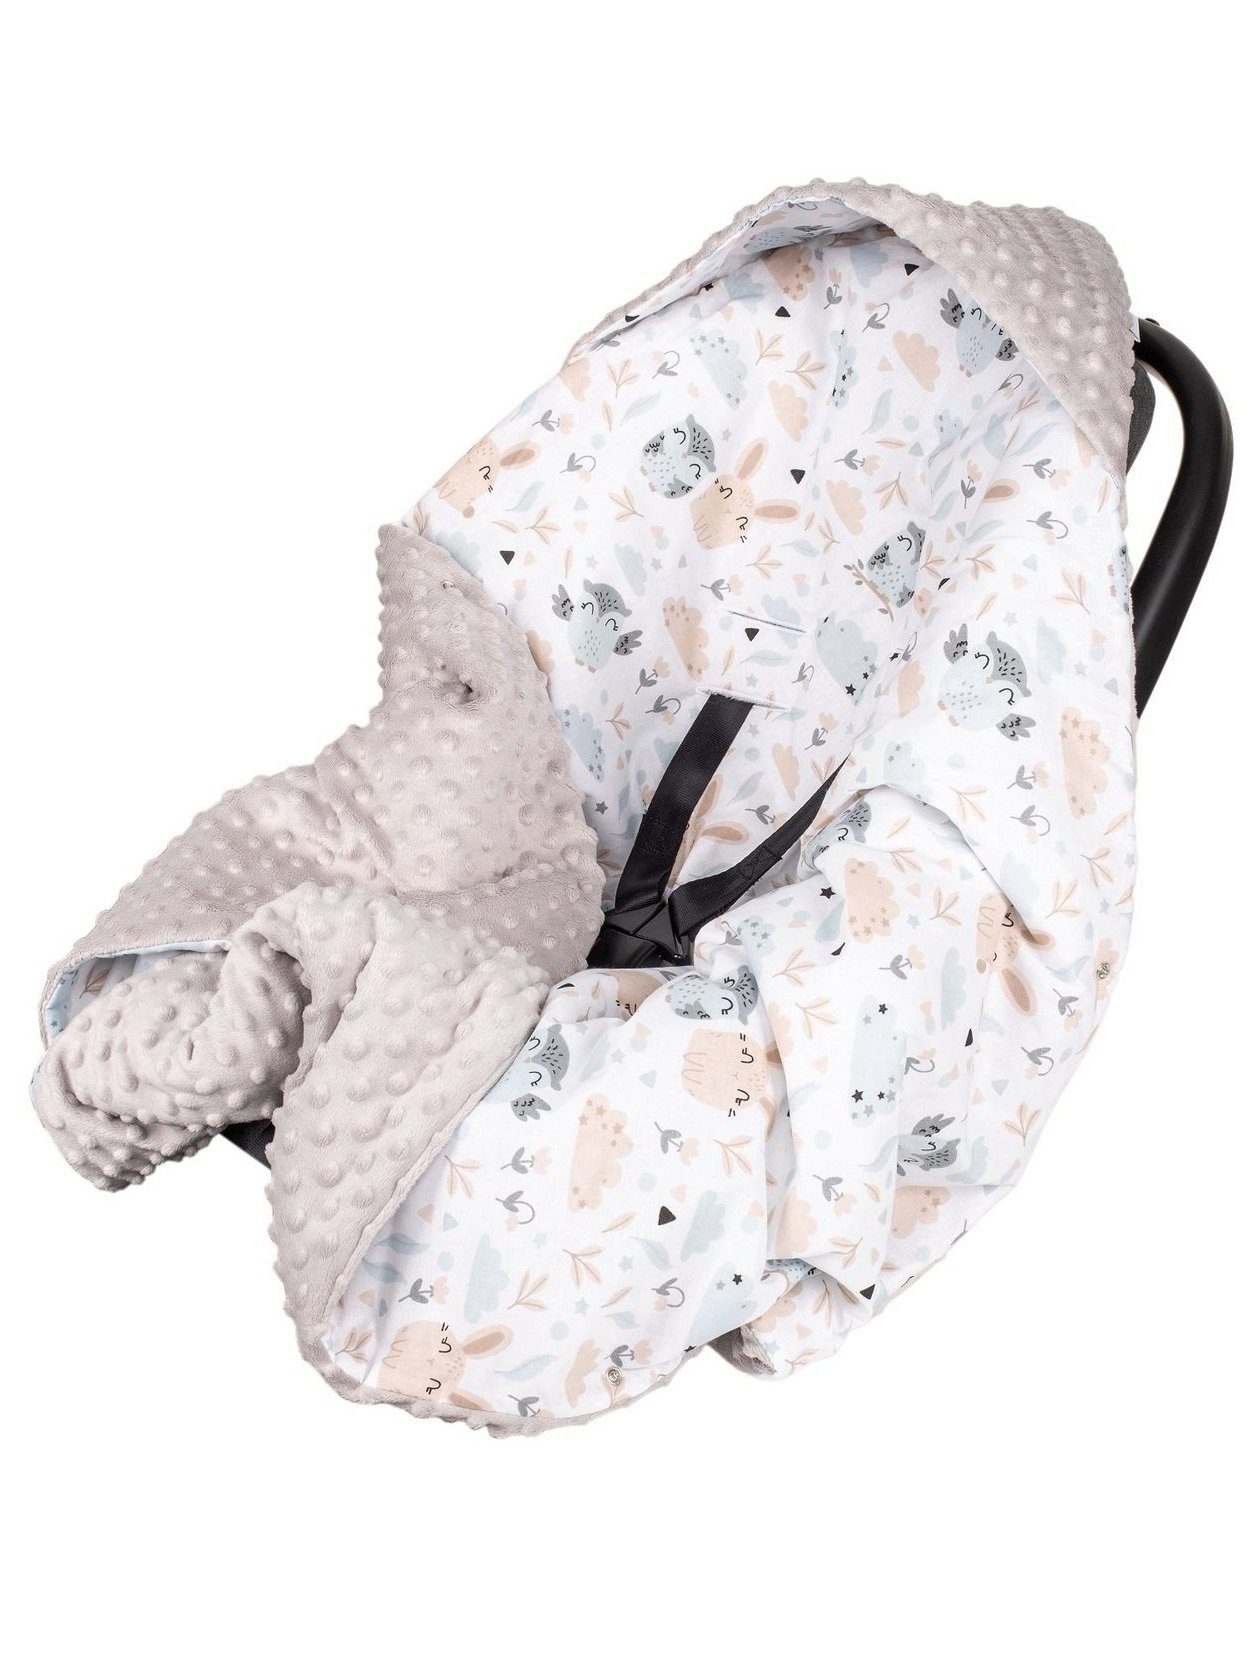 Divita Babydecke Minky 90x90 cm Decke Baby Einschlagdecke mit Kapuze für Kinderwagen Buggy Babyschale